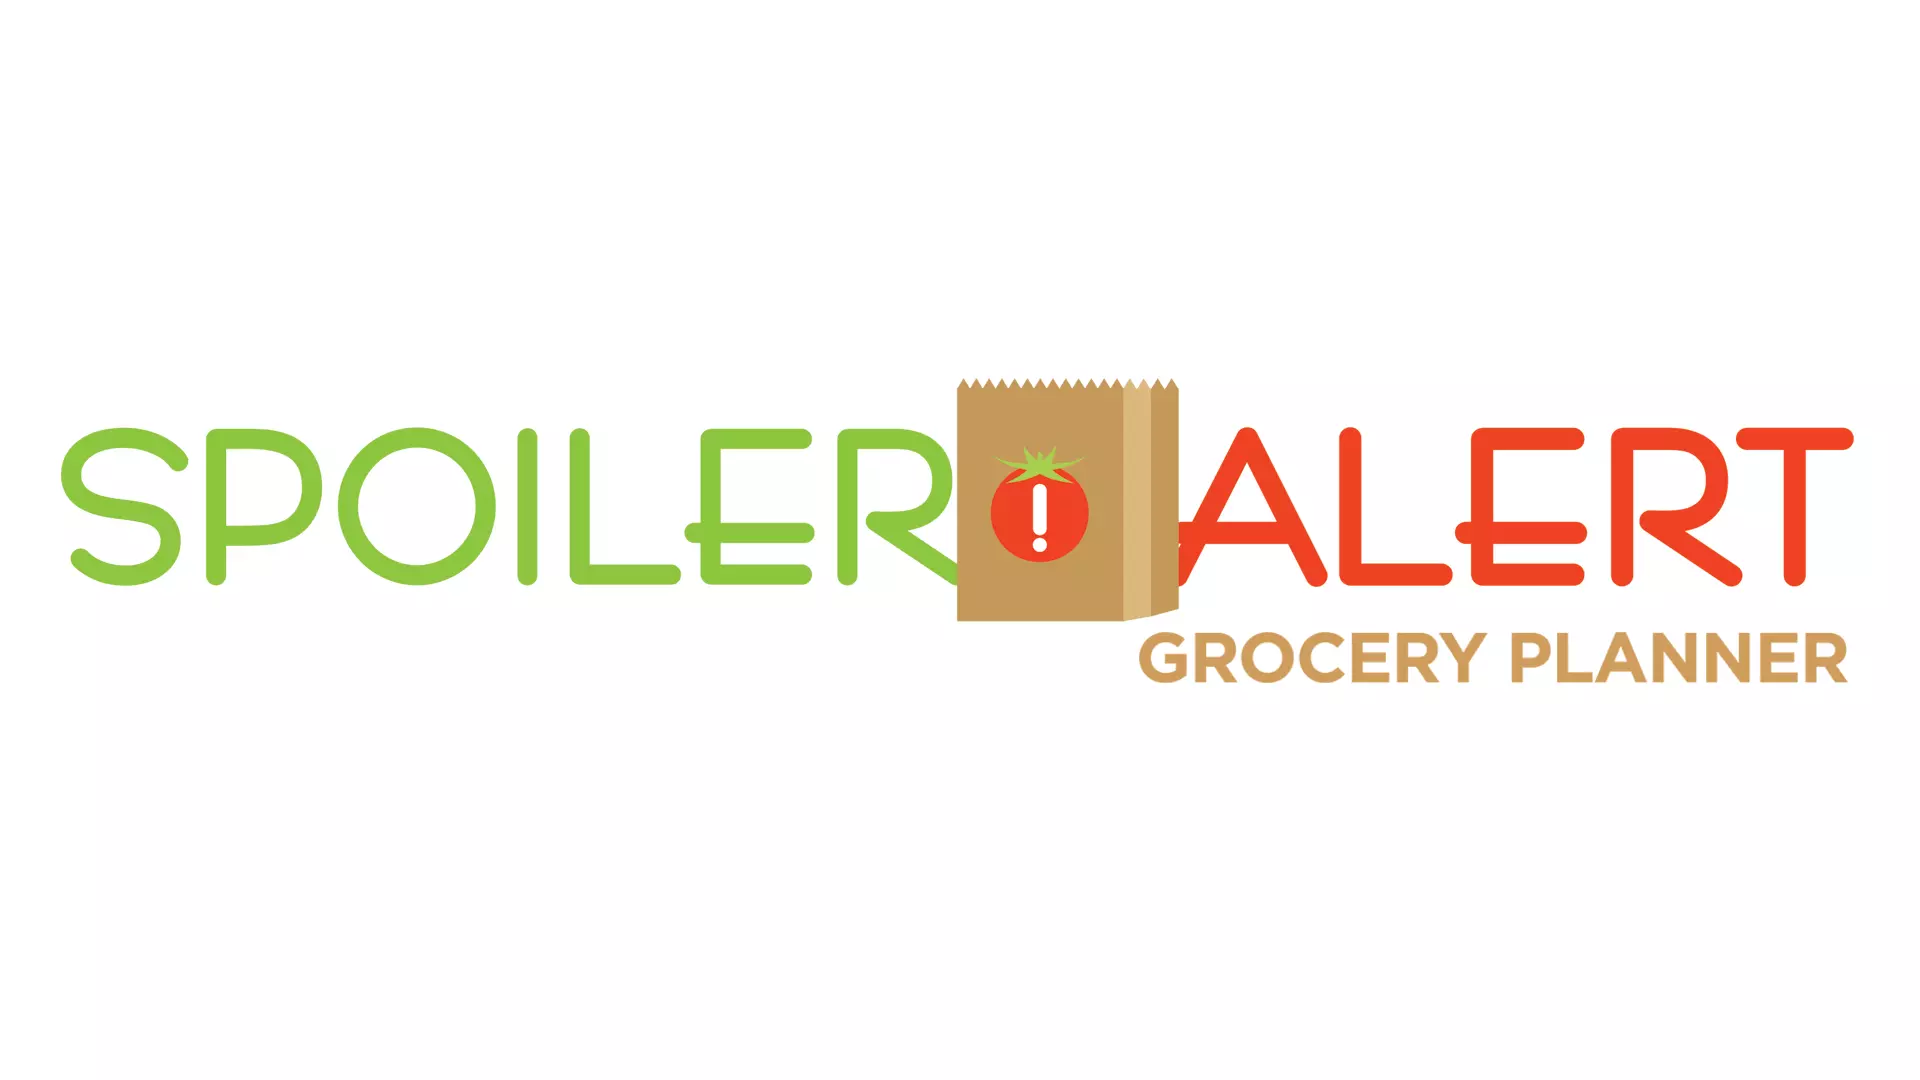 Spoiler Alert Grocery Planner Logo Identity